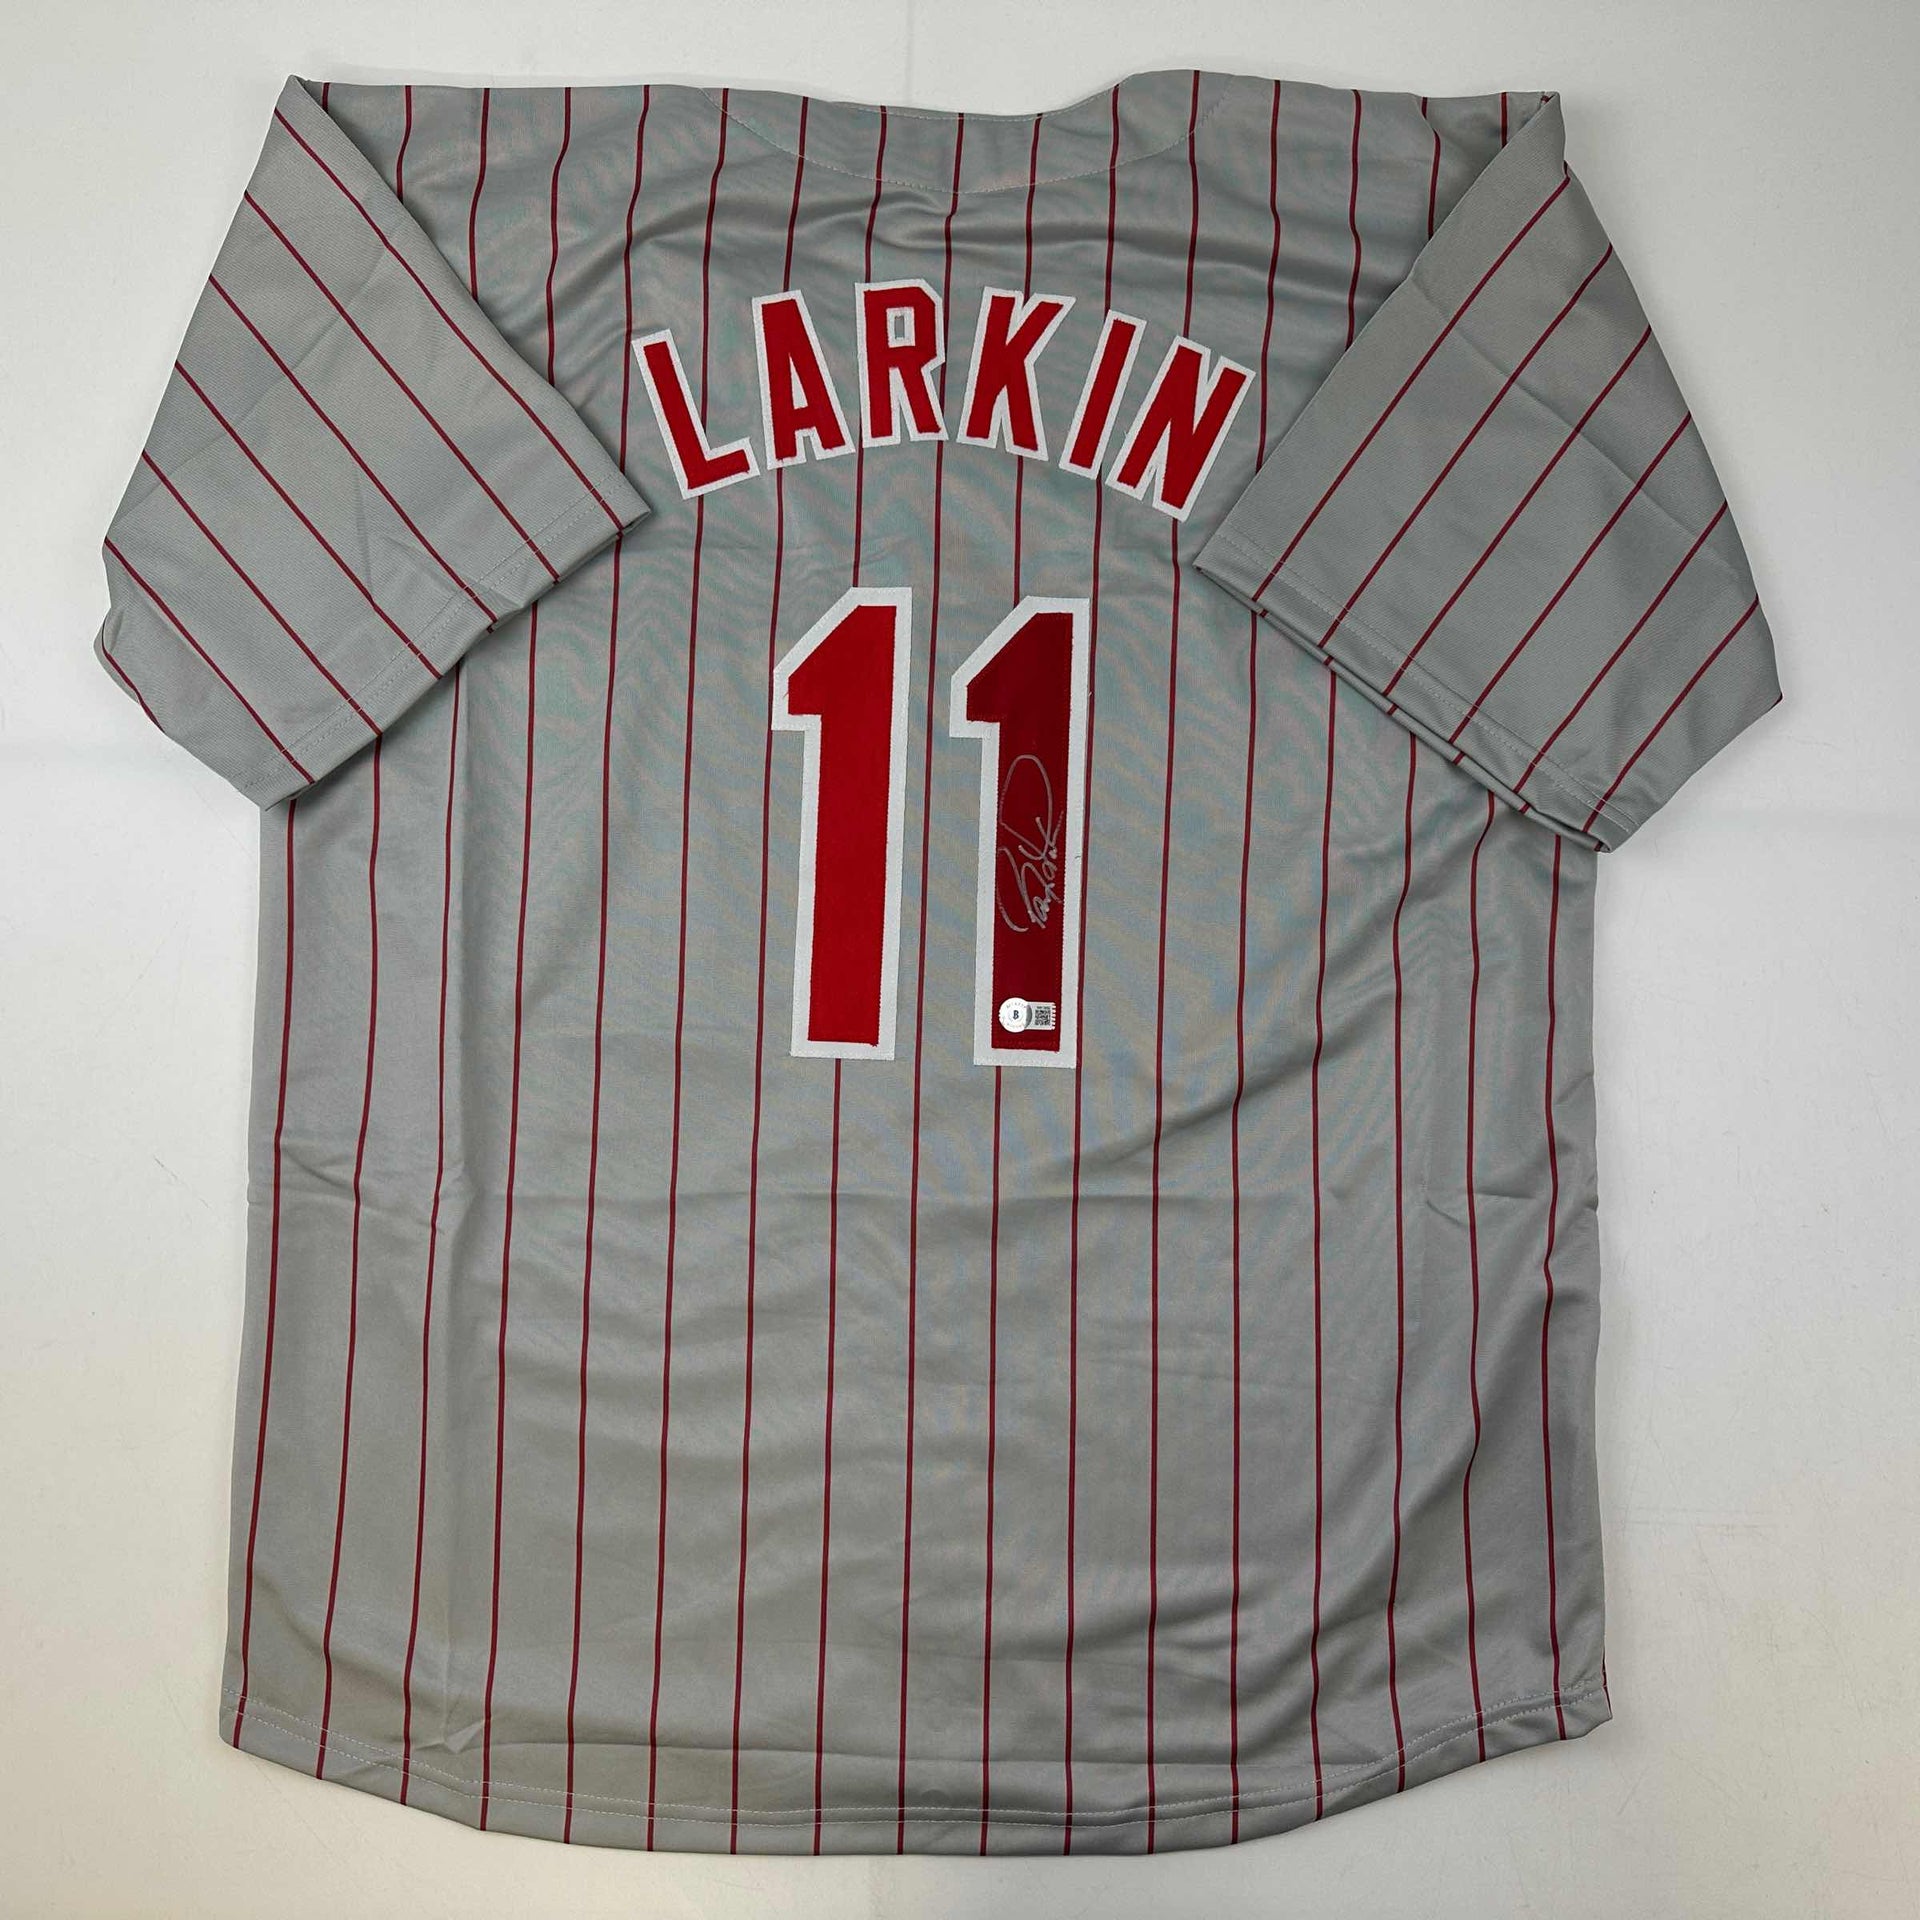 Barry Larkin Signed Jersey (JSA)